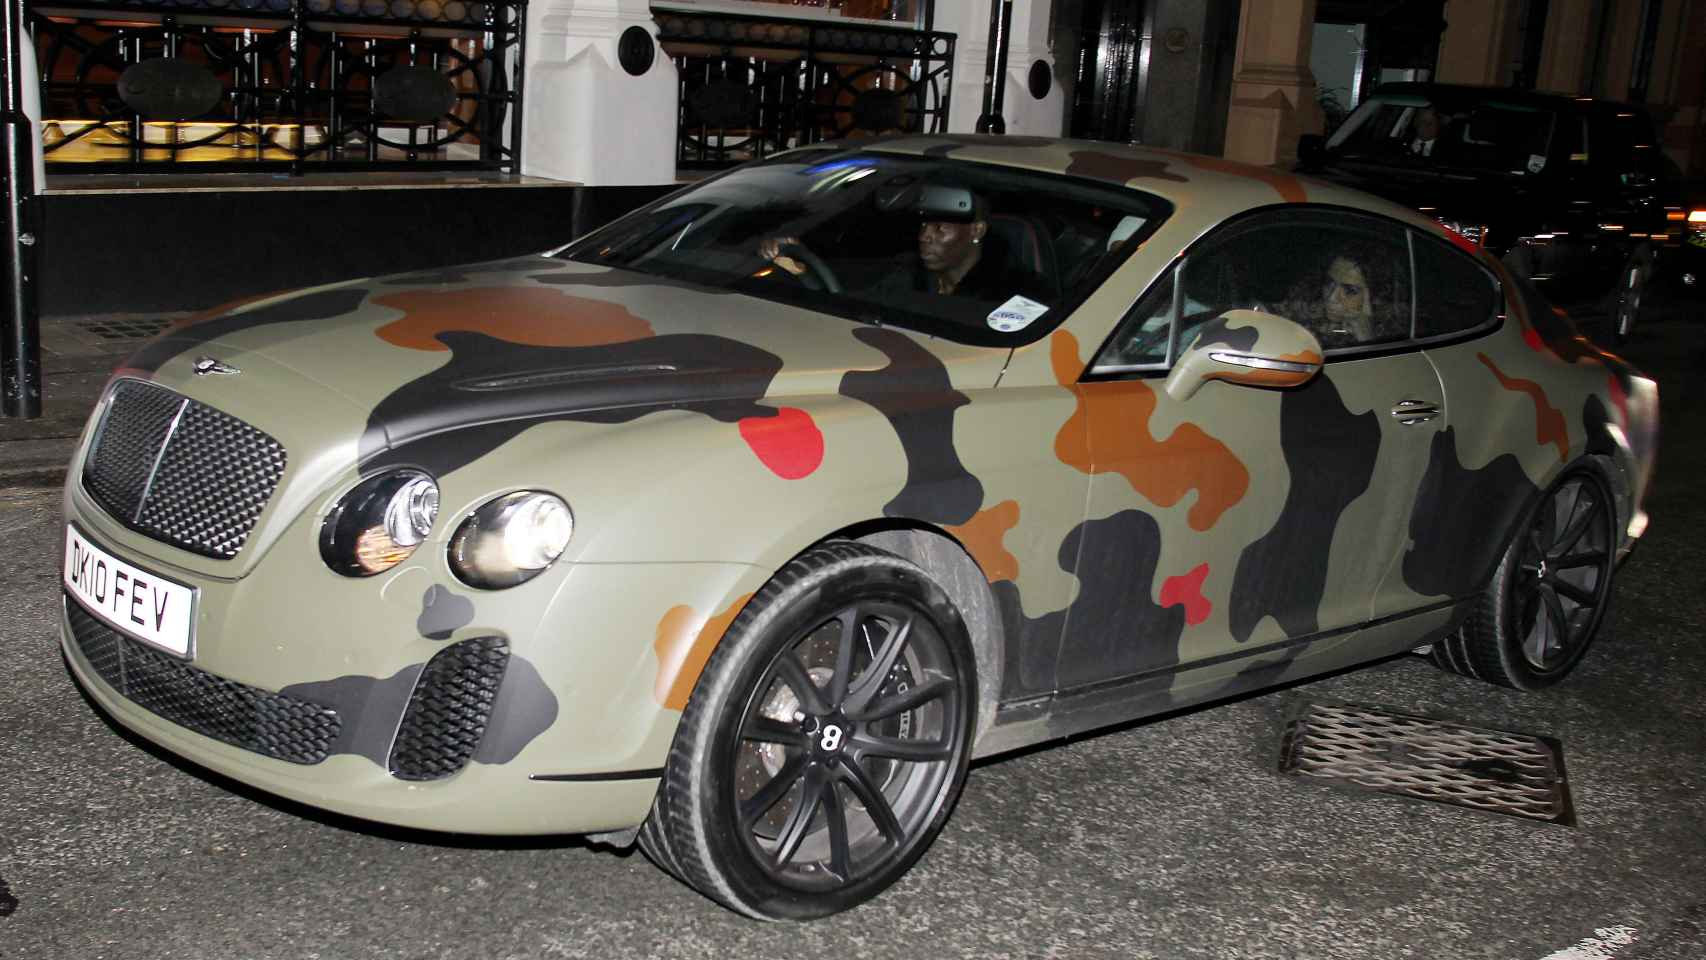 El coche camuflado de Balotelli